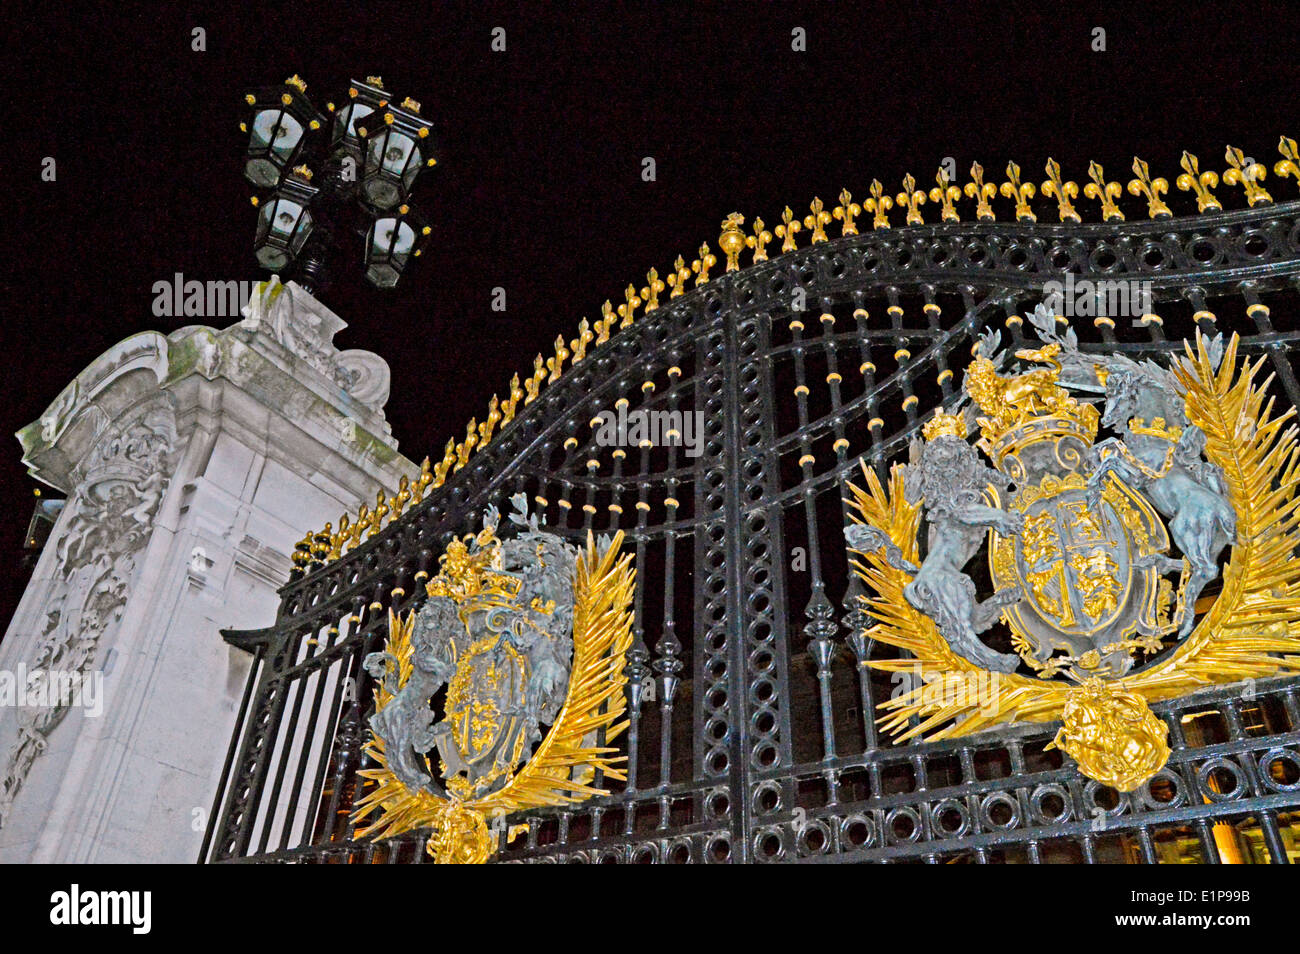 The Buckingham Palace gates at night, City of Westminster, London, England, United Kingdom Stock Photo